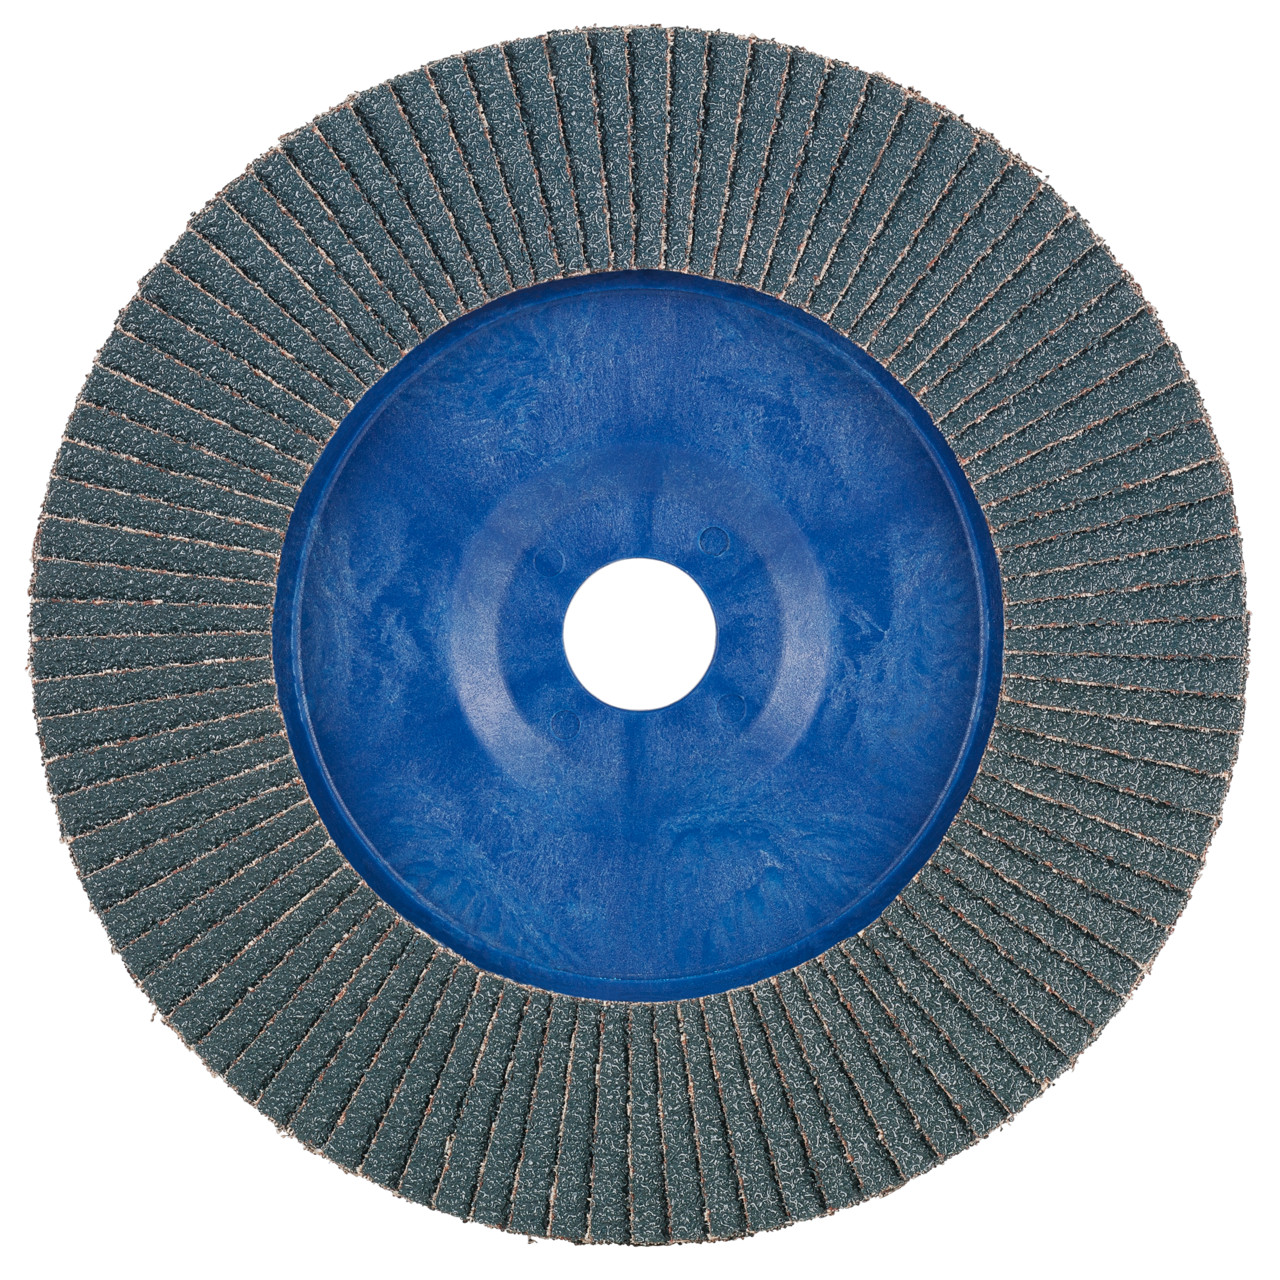 TYROLIT arandela dentada DxH 115x22,2 2en1 para acero y acero inoxidable, P80, forma: 28N - versión recta (cuerpo portante de plástico), Art. 847927